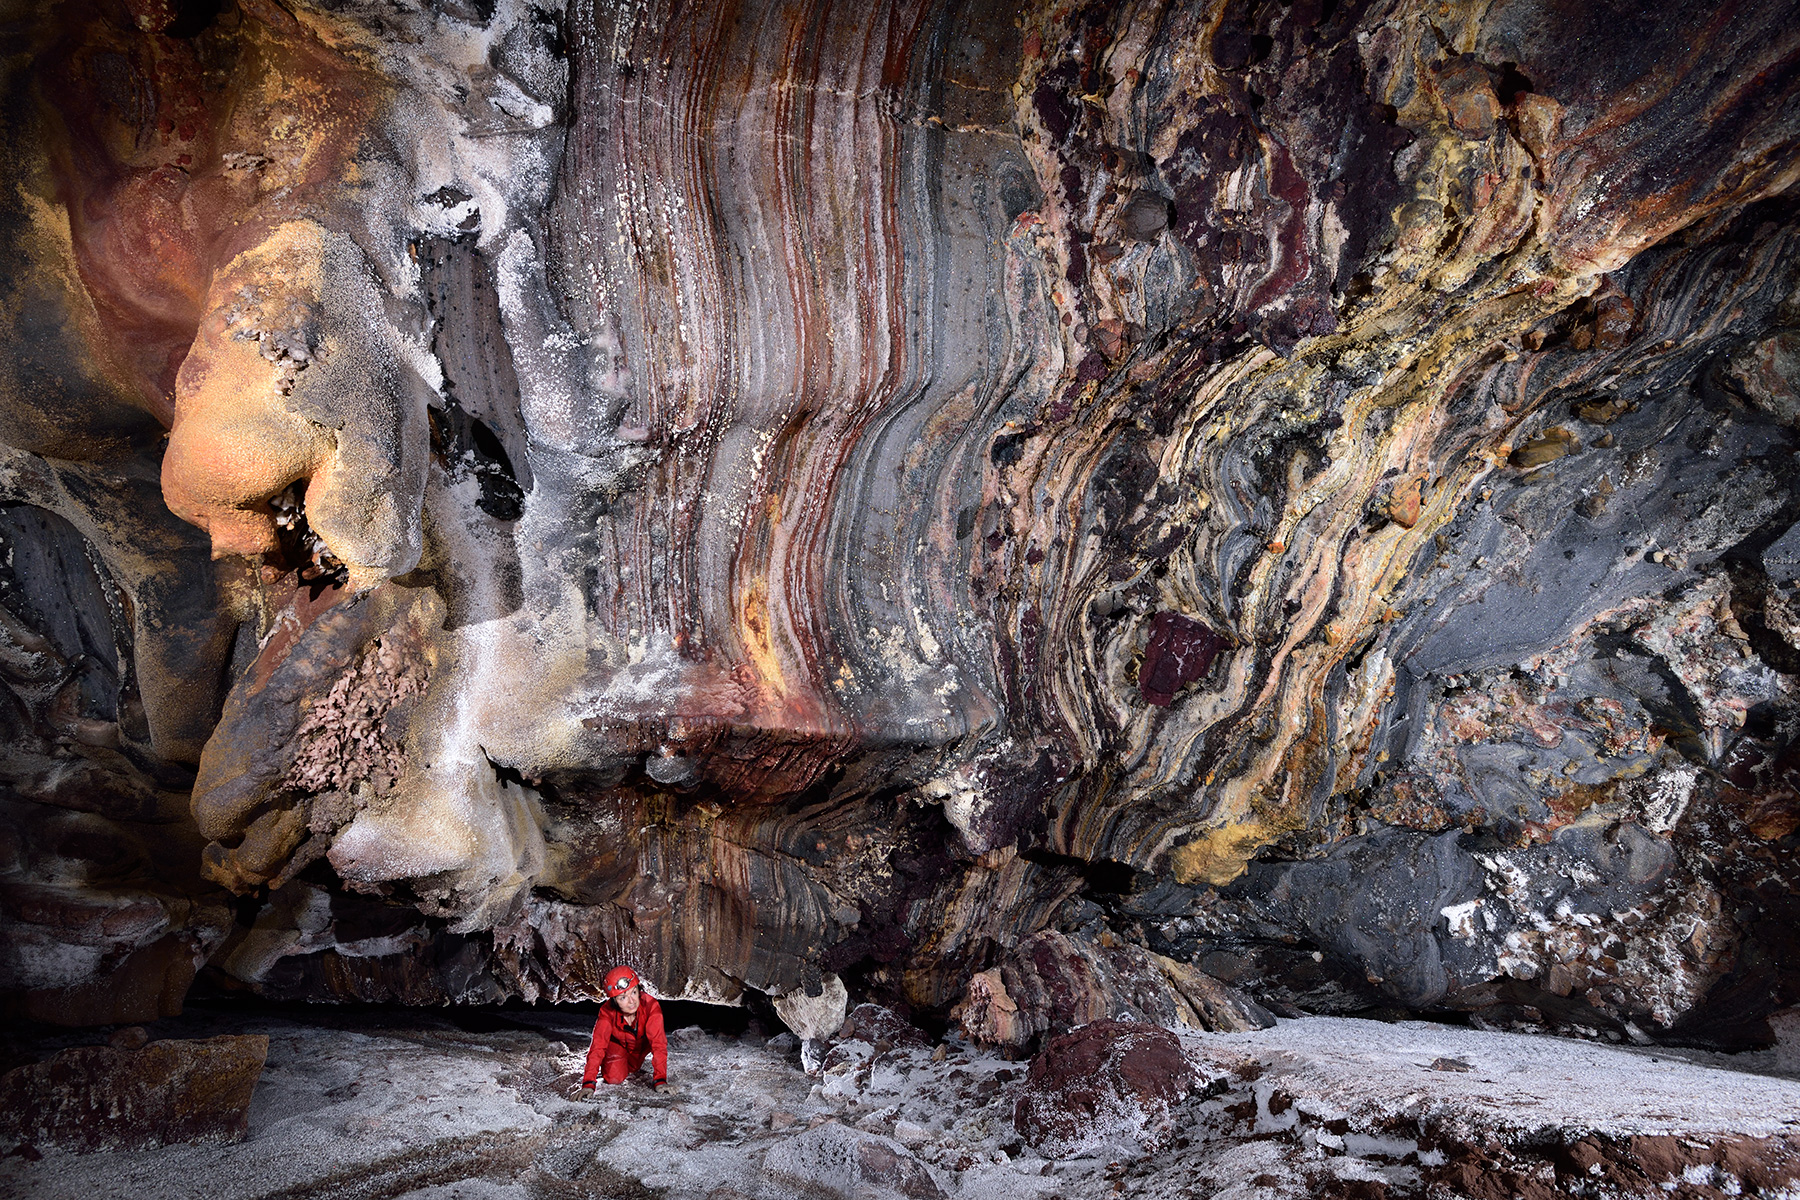 Daneshjoo Cave (Iran, île d'Hormoz) : spéléo débouchant d'un passage bas dans une salle avec dépôts de sel colorés